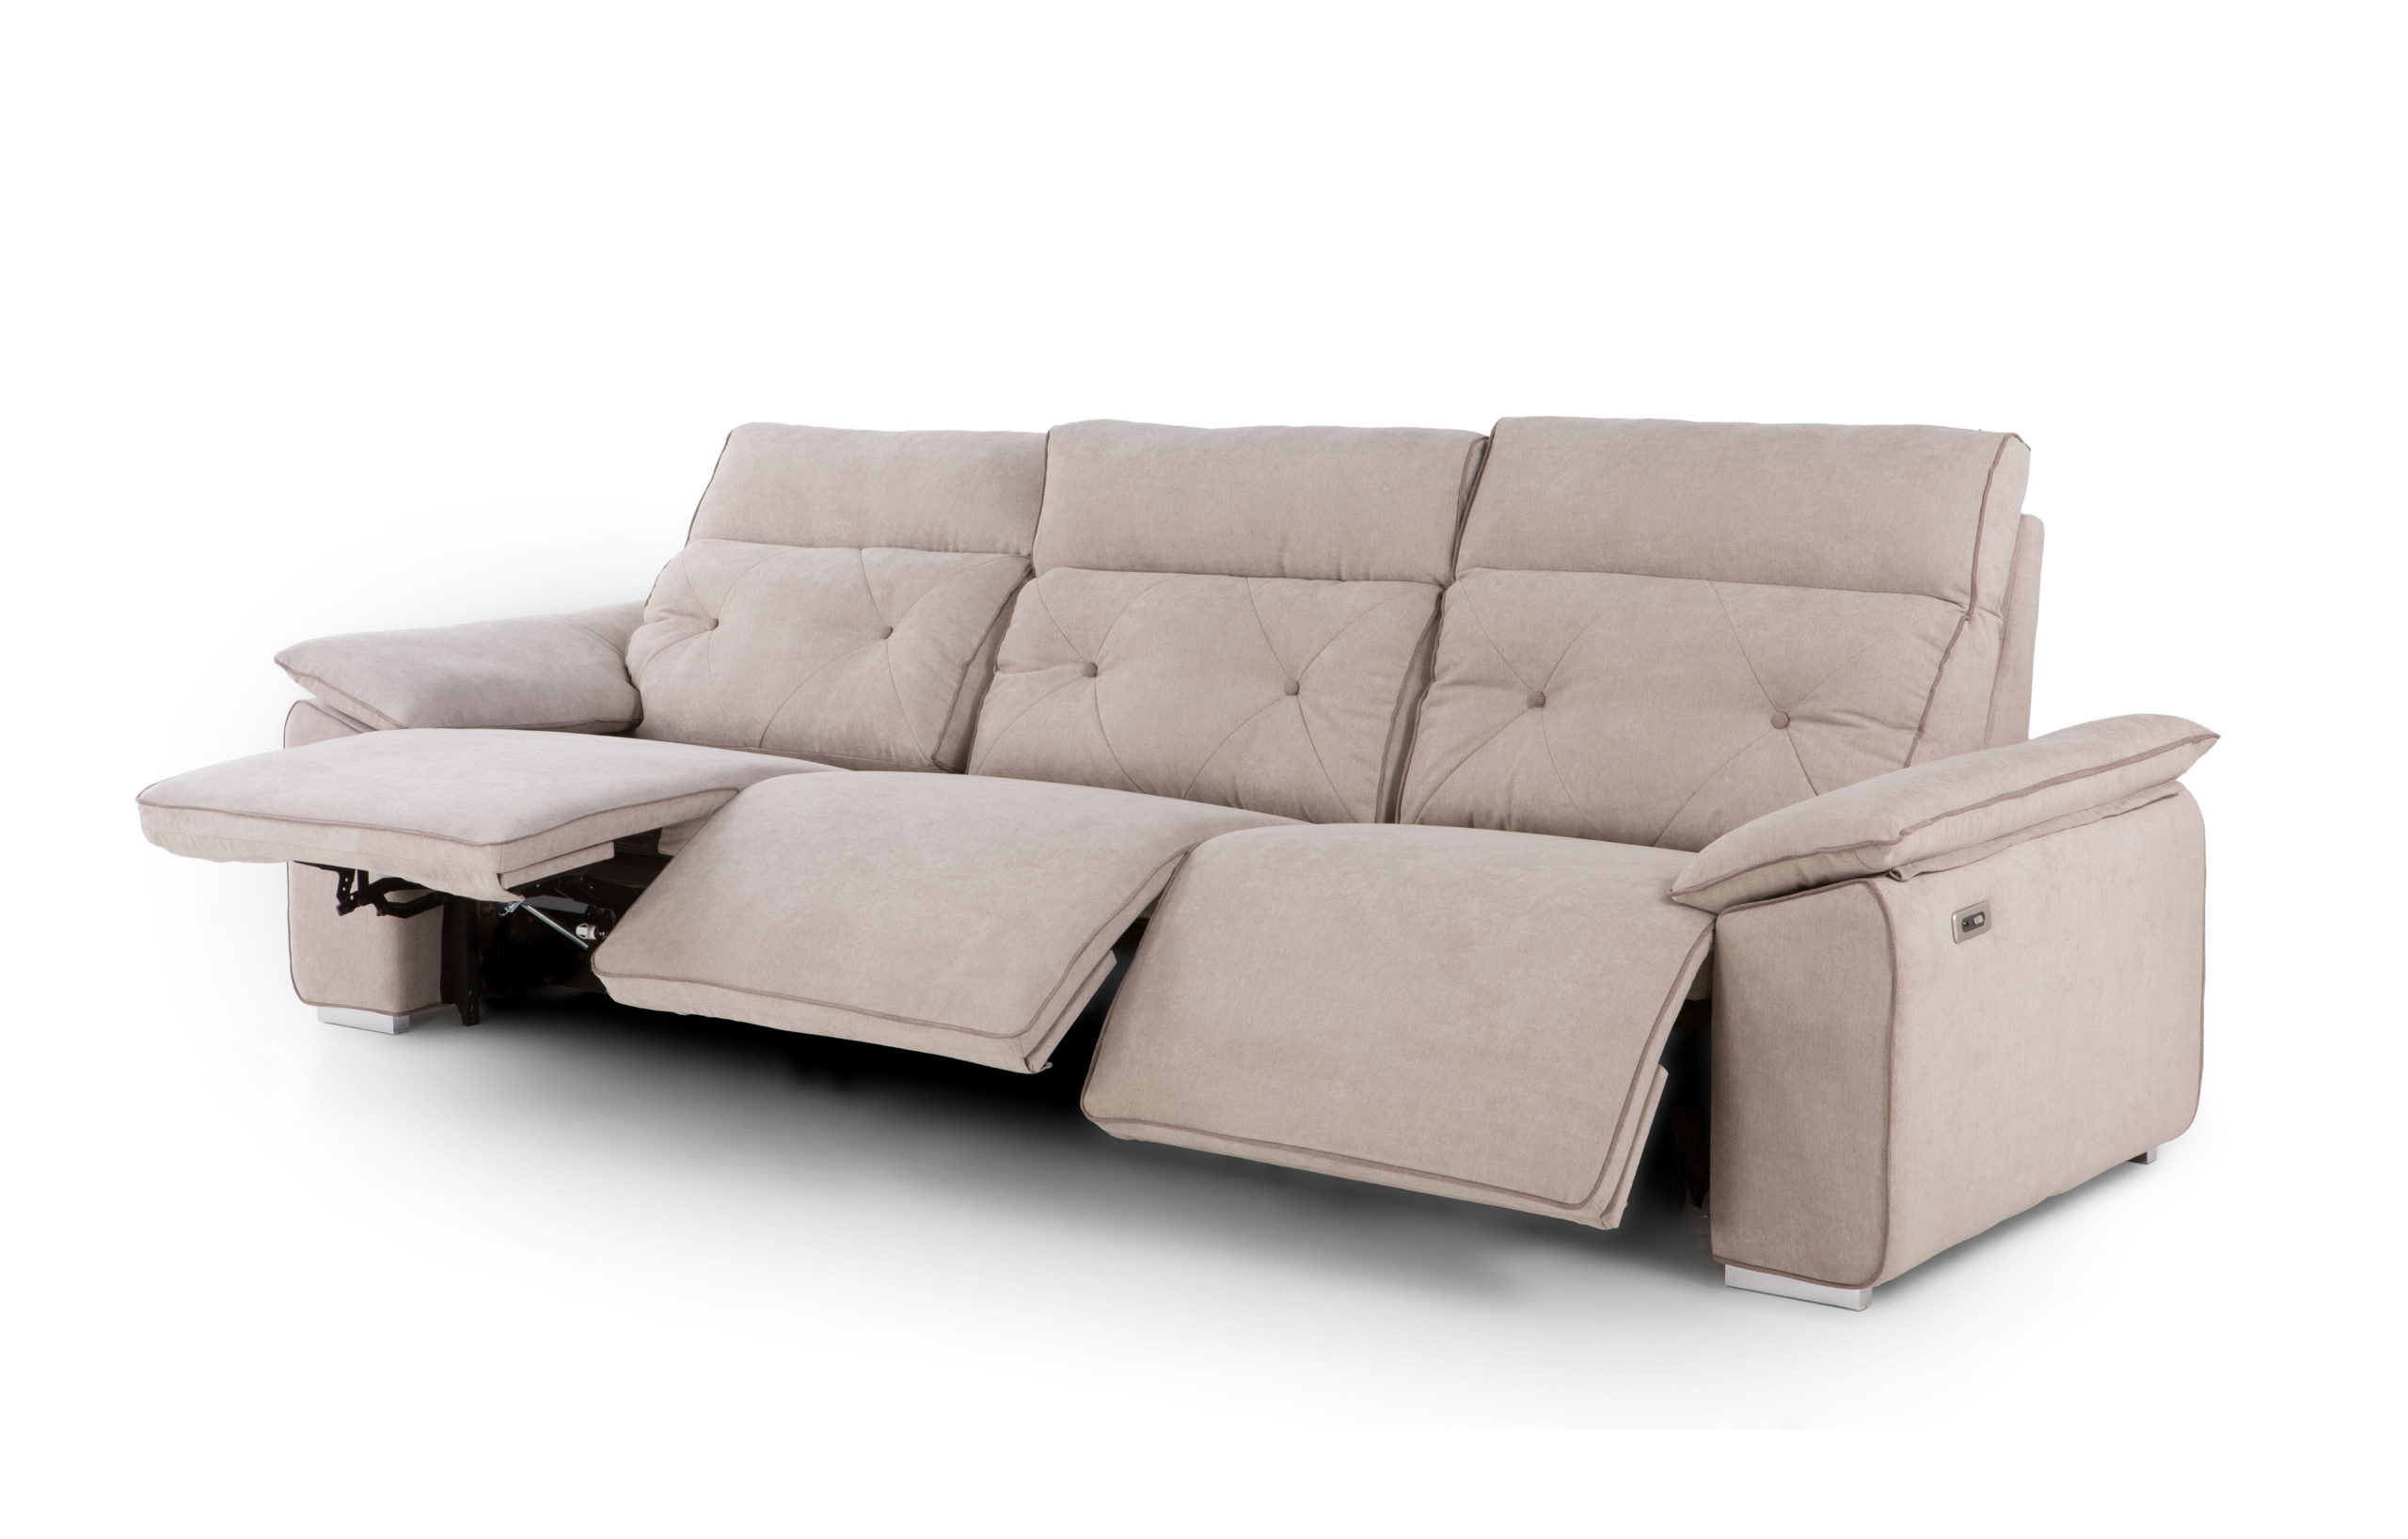 NATIVA sofá modular asientos relax o fijos by Reyes Ordoñez SOFÁ CHAISE-LONGUE Nativa sofá 001.3 de venta en Muebles ANTOÑÁN León